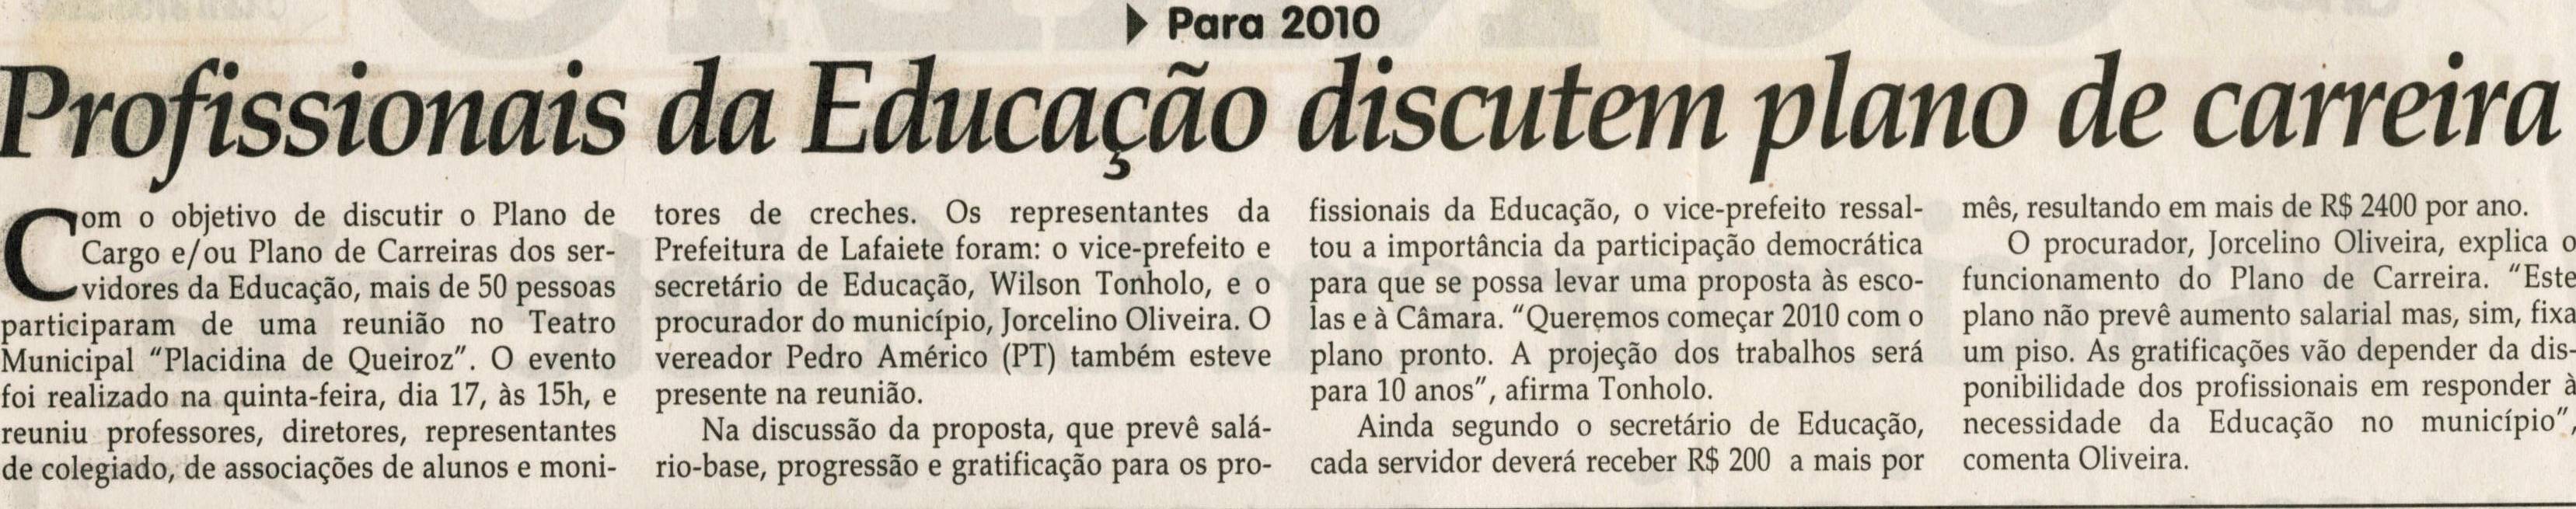 Profissionais da Educação discutem plano de carreira. Jornal Correio da Cidade, Conselheiro Lafaiete, 26 dez. 2009, p. 02.